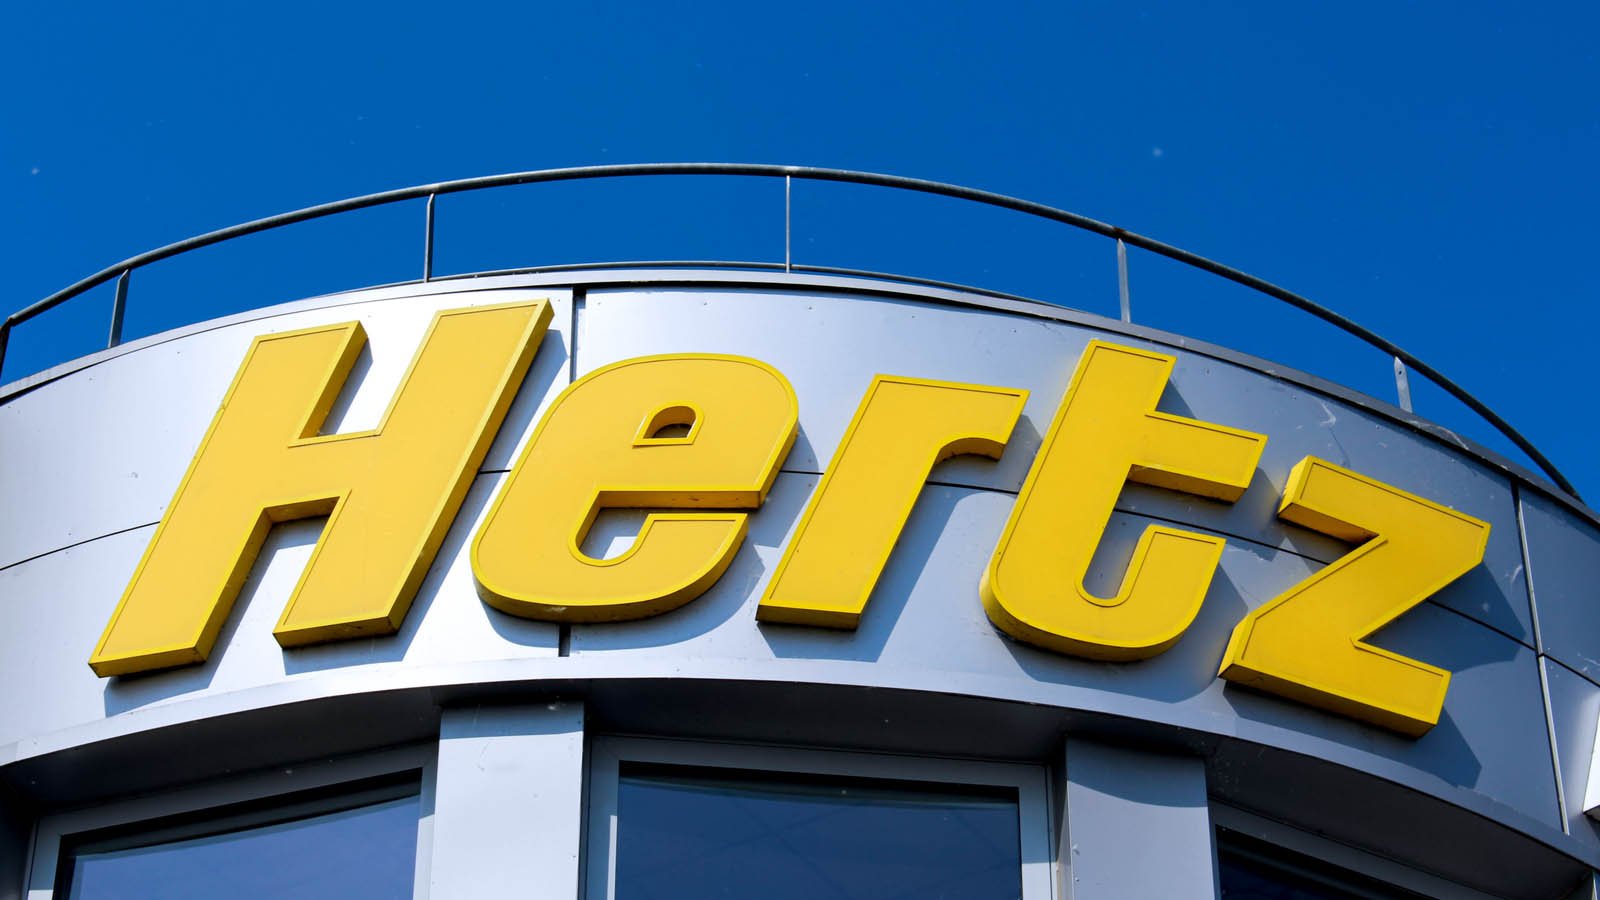 Hertz Rental Car Lawsuit. Hertz (HTZ Stock) sign in Montevrain, France on May 8, 2016.